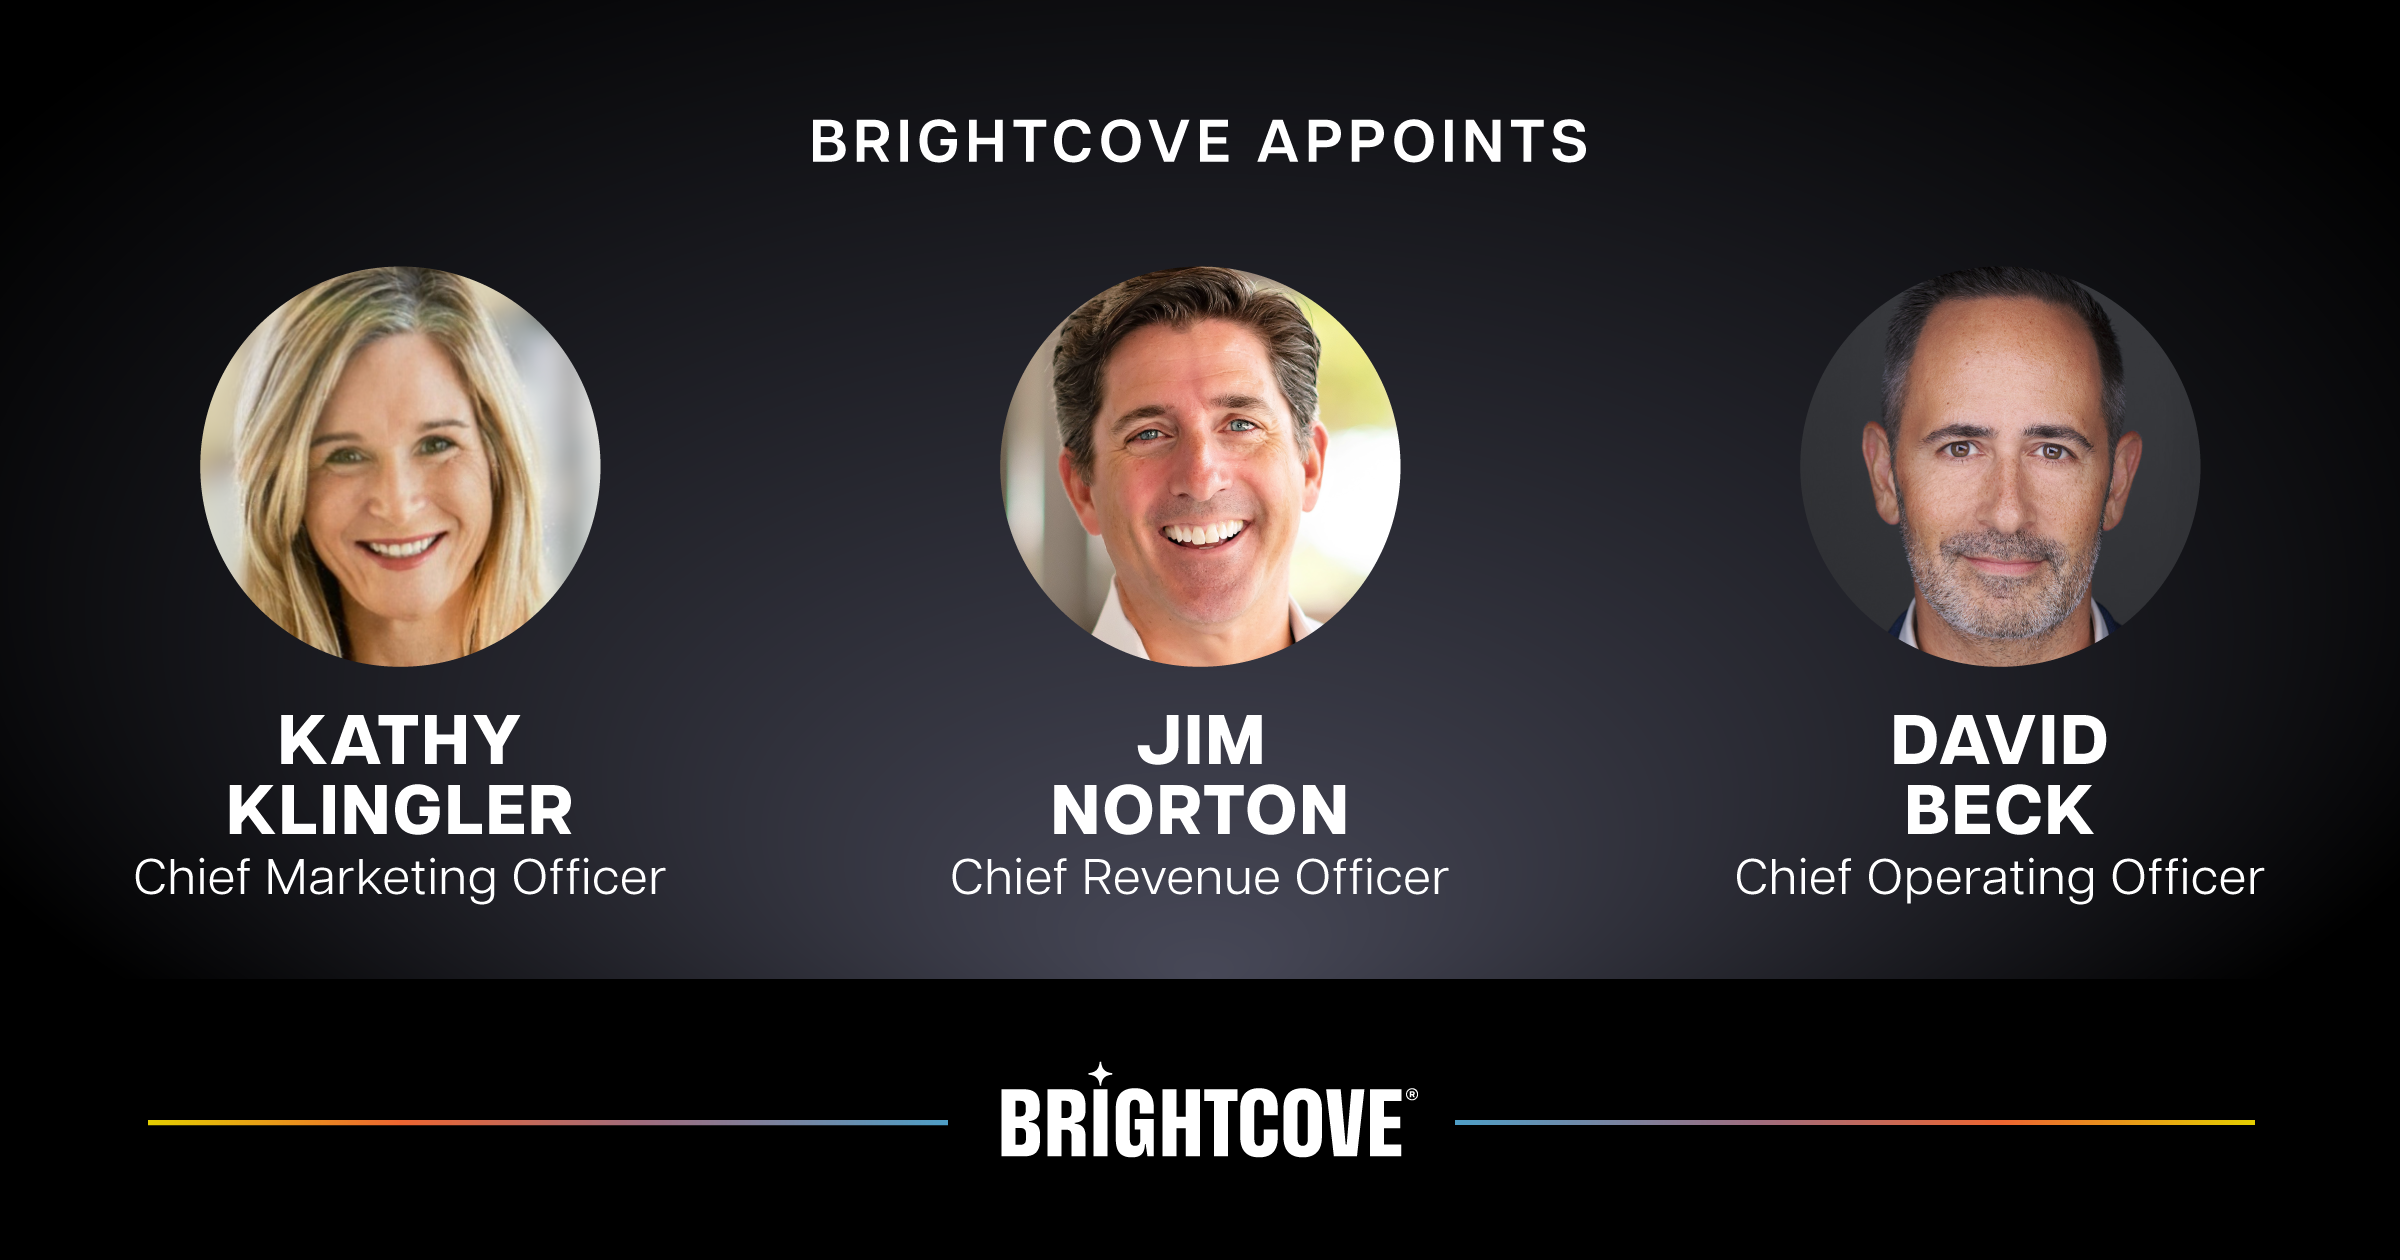 Brightcove Appoints New CMO, CRO, COO